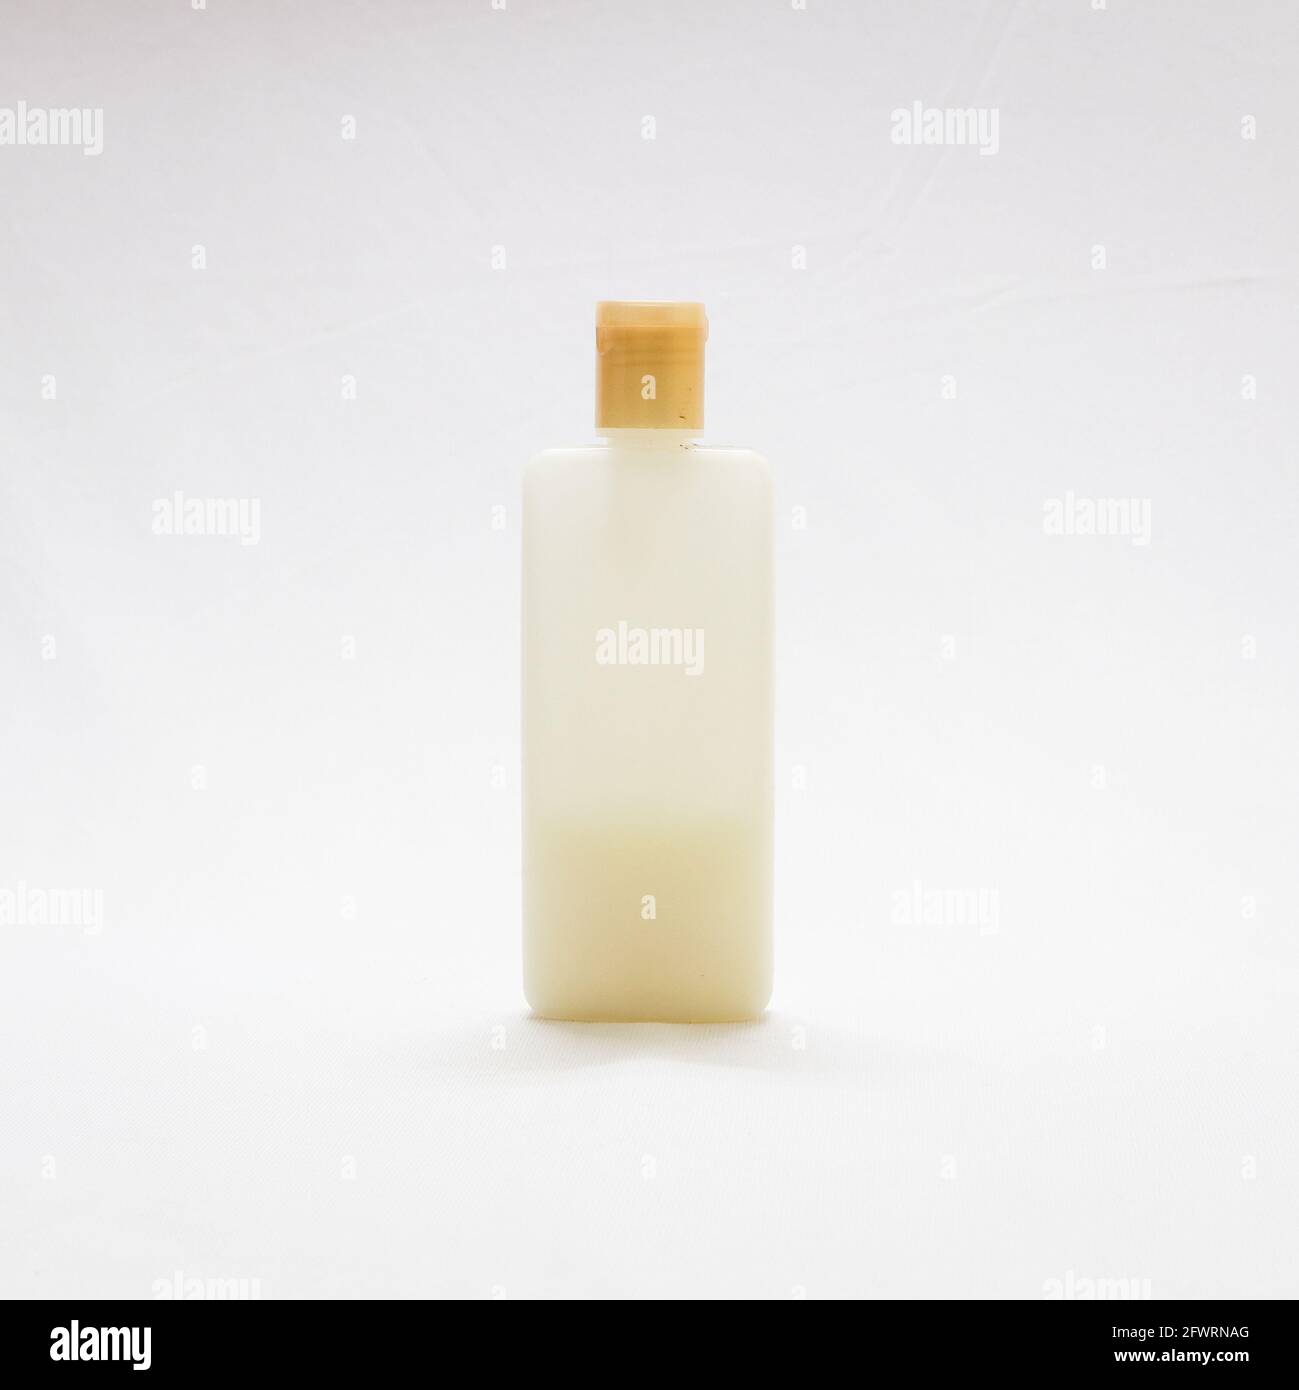 hydratant esthétique de couleur crème dans un flacon en plastique translucide isolé sur fond blanc Banque D'Images